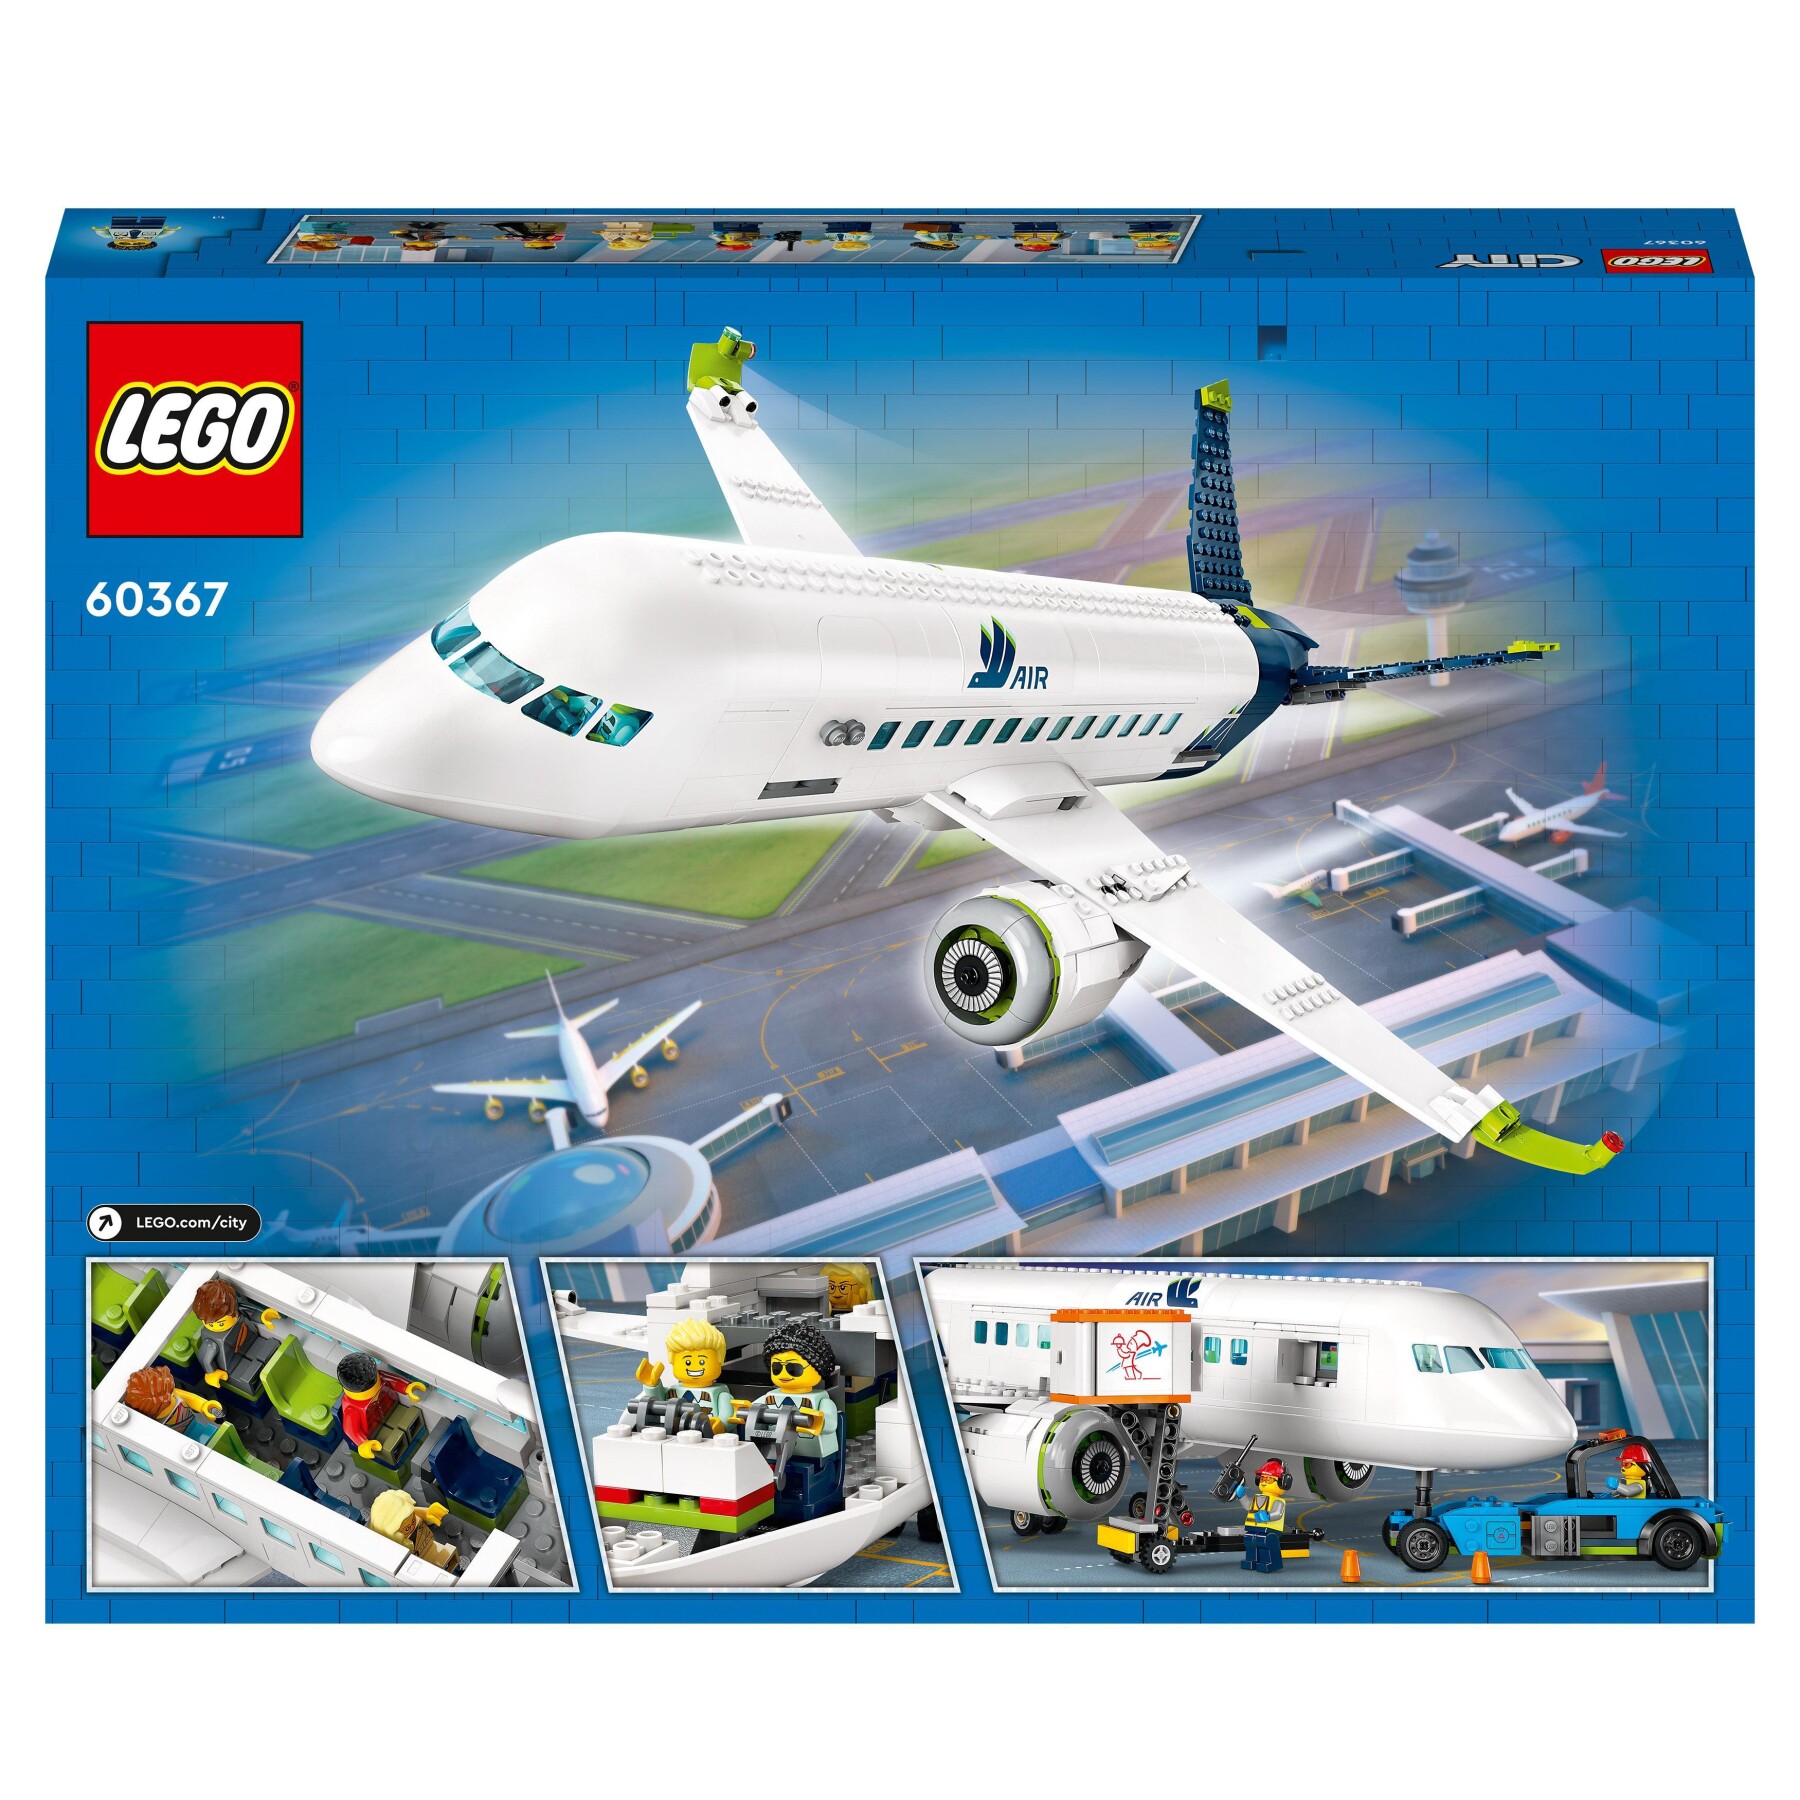 Aereo Lego City 6368, anni 80/90 - Collezionismo In vendita a Monza e della  Brianza